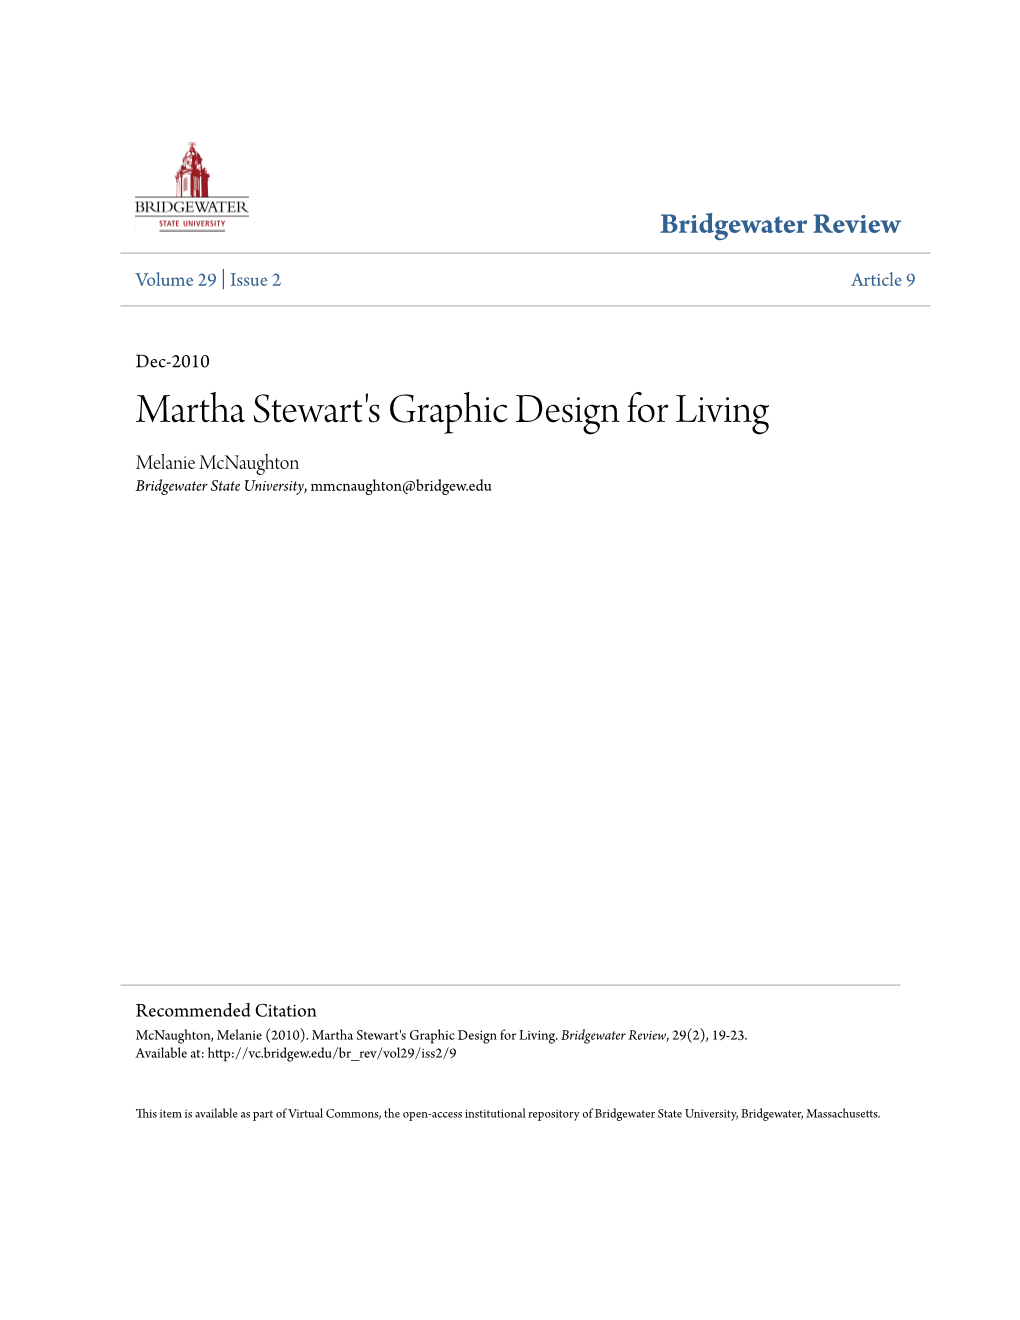 Martha Stewart's Graphic Design for Living Melanie Mcnaughton Bridgewater State University, Mmcnaughton@Bridgew.Edu